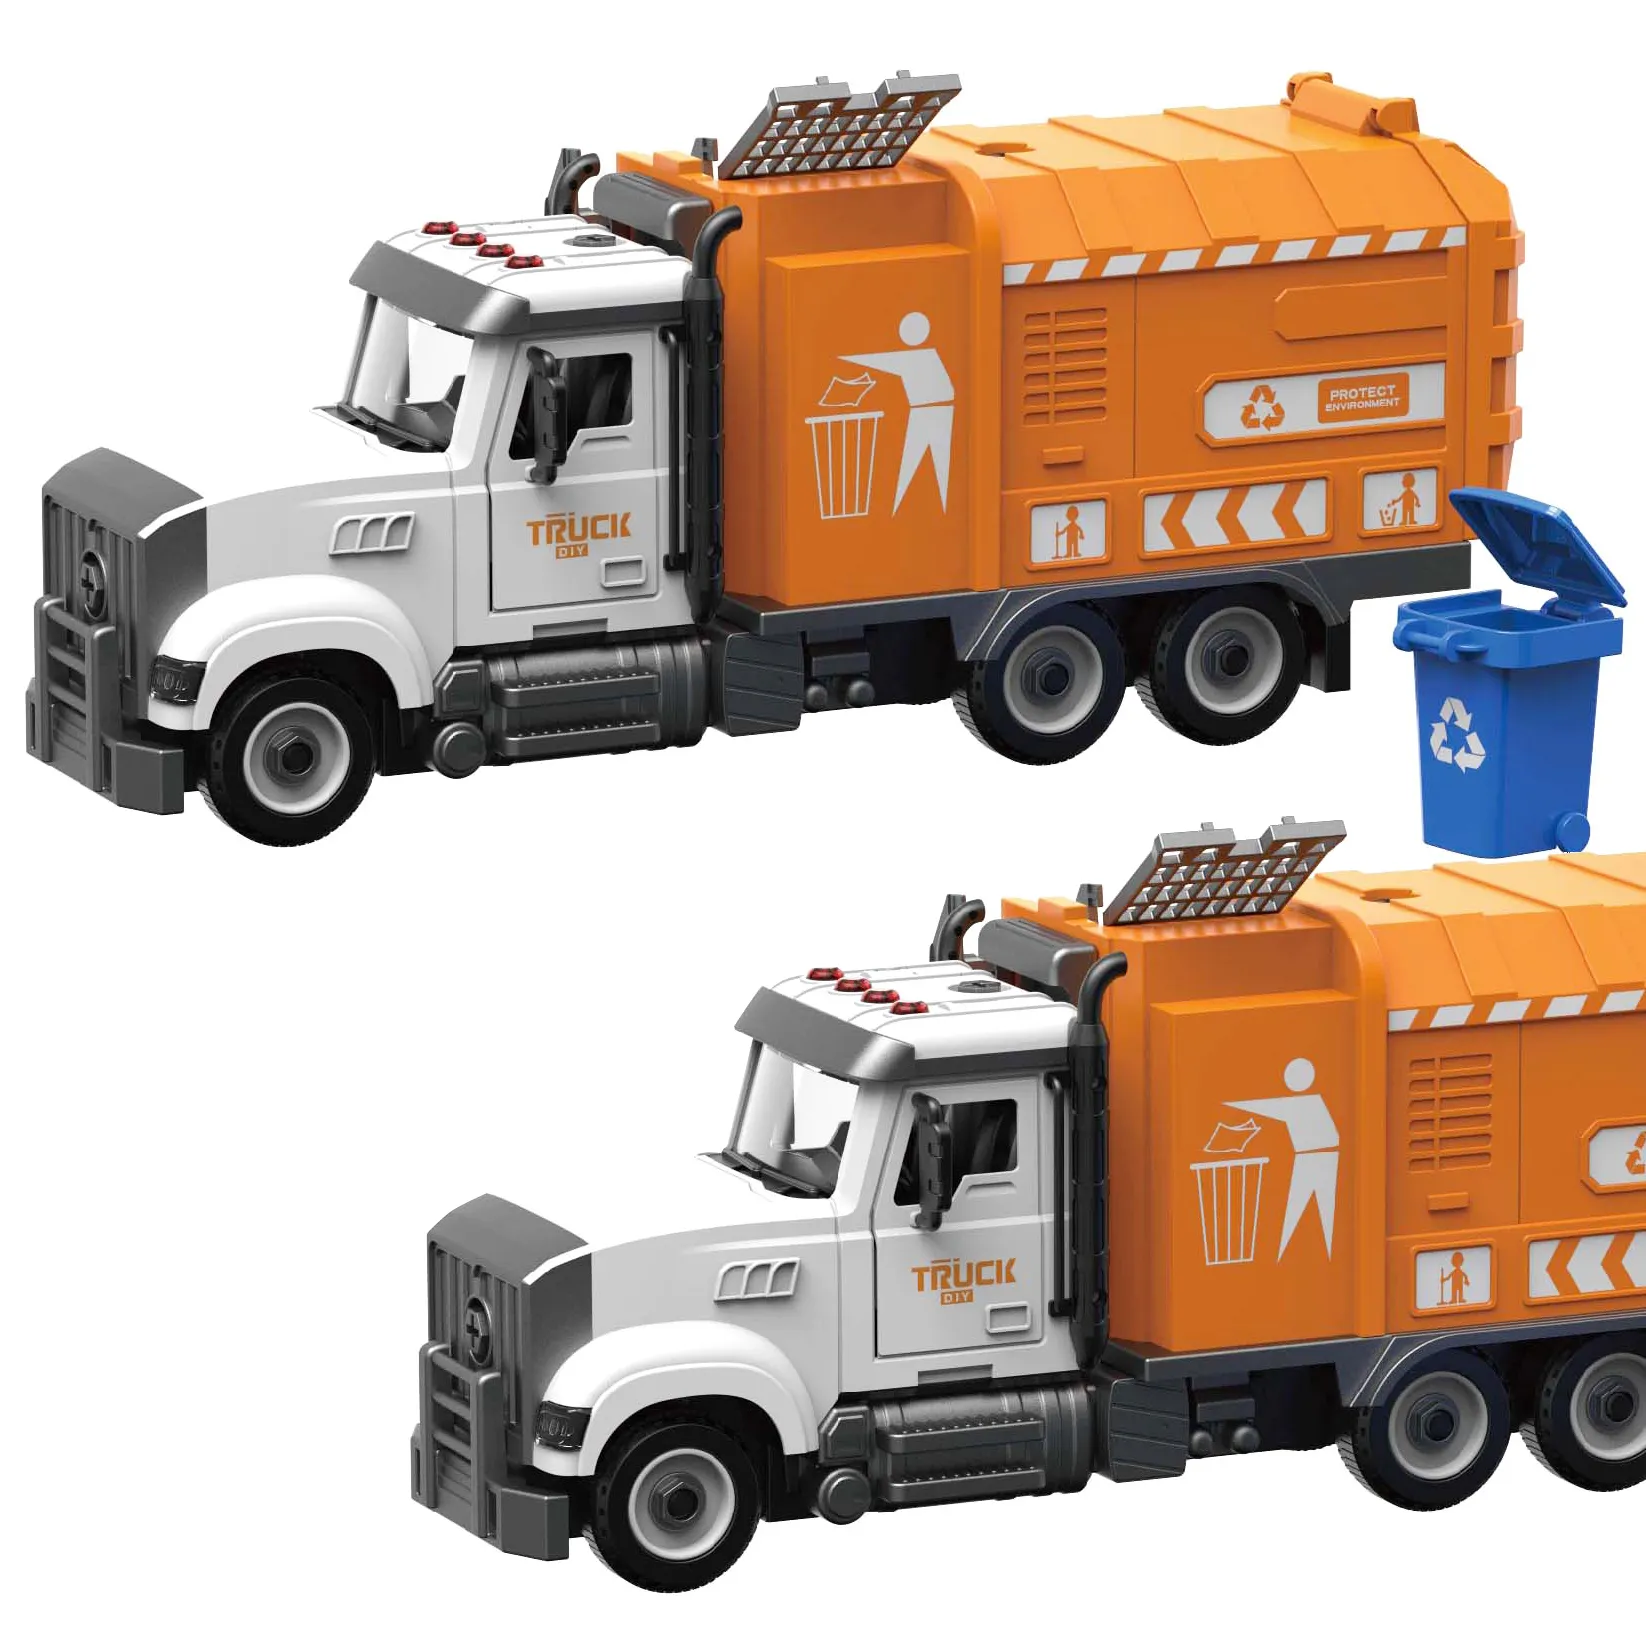 Erkek yeni ürün diğer oyuncak araç Diy mühendislik şehir sanitasyon çöp kamyon oyuncak araç birleştirin